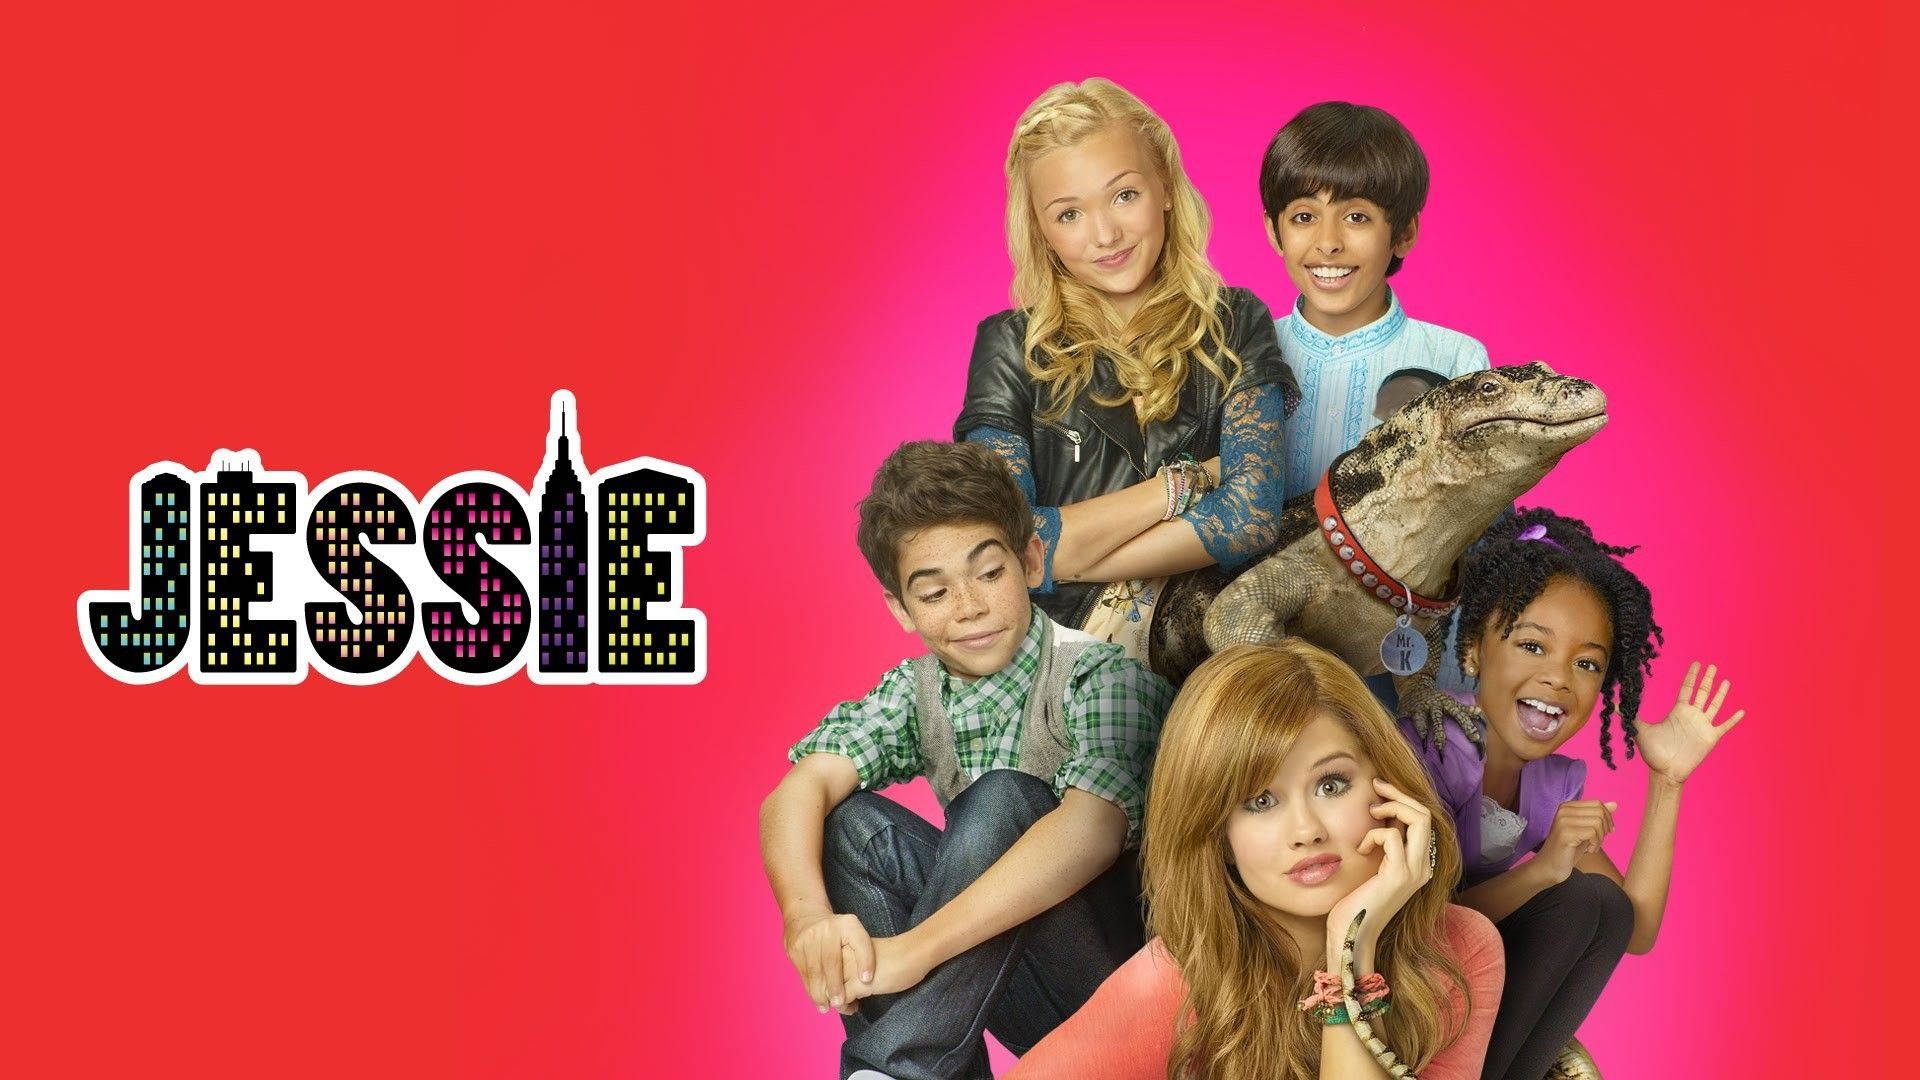 Disney Channel Jessie Poster Background